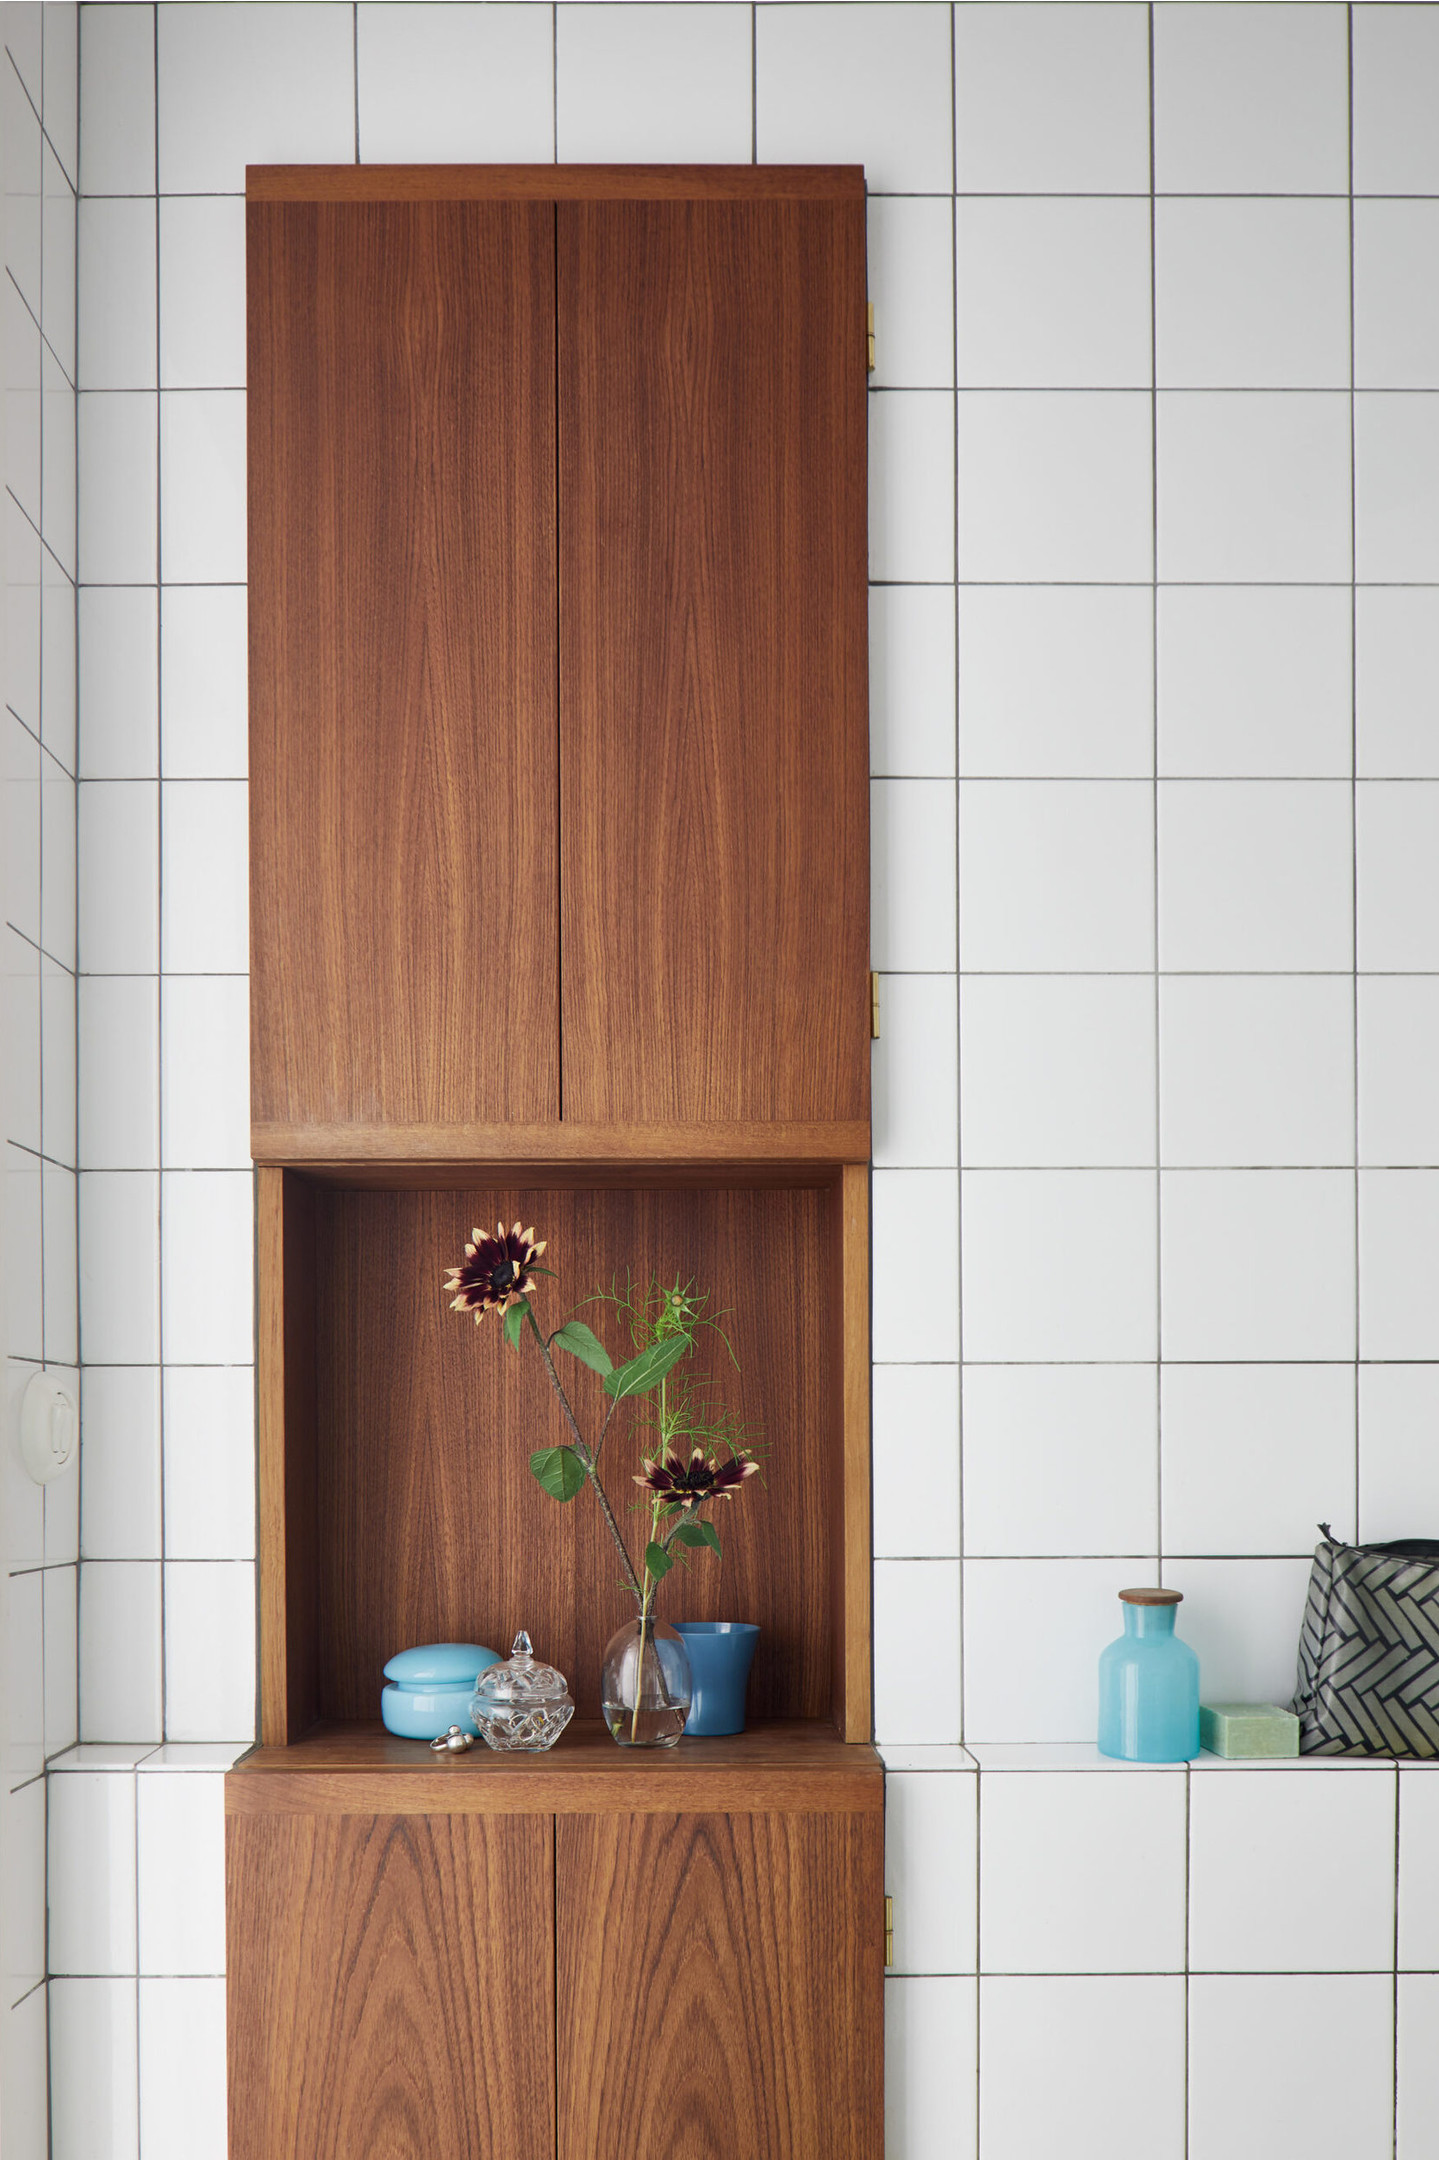 Lựa chọn hệ tủ lưu trữ bằng gỗ ấm áp giúp không gian căn phòng ốp gạch mosaic vuông màu trắng trở nên nổi bật và có điểm nhấn hơn hẳn. Đây cũng là giải pháp thiết kế khéo léo mà bạn có thể tham khảo.